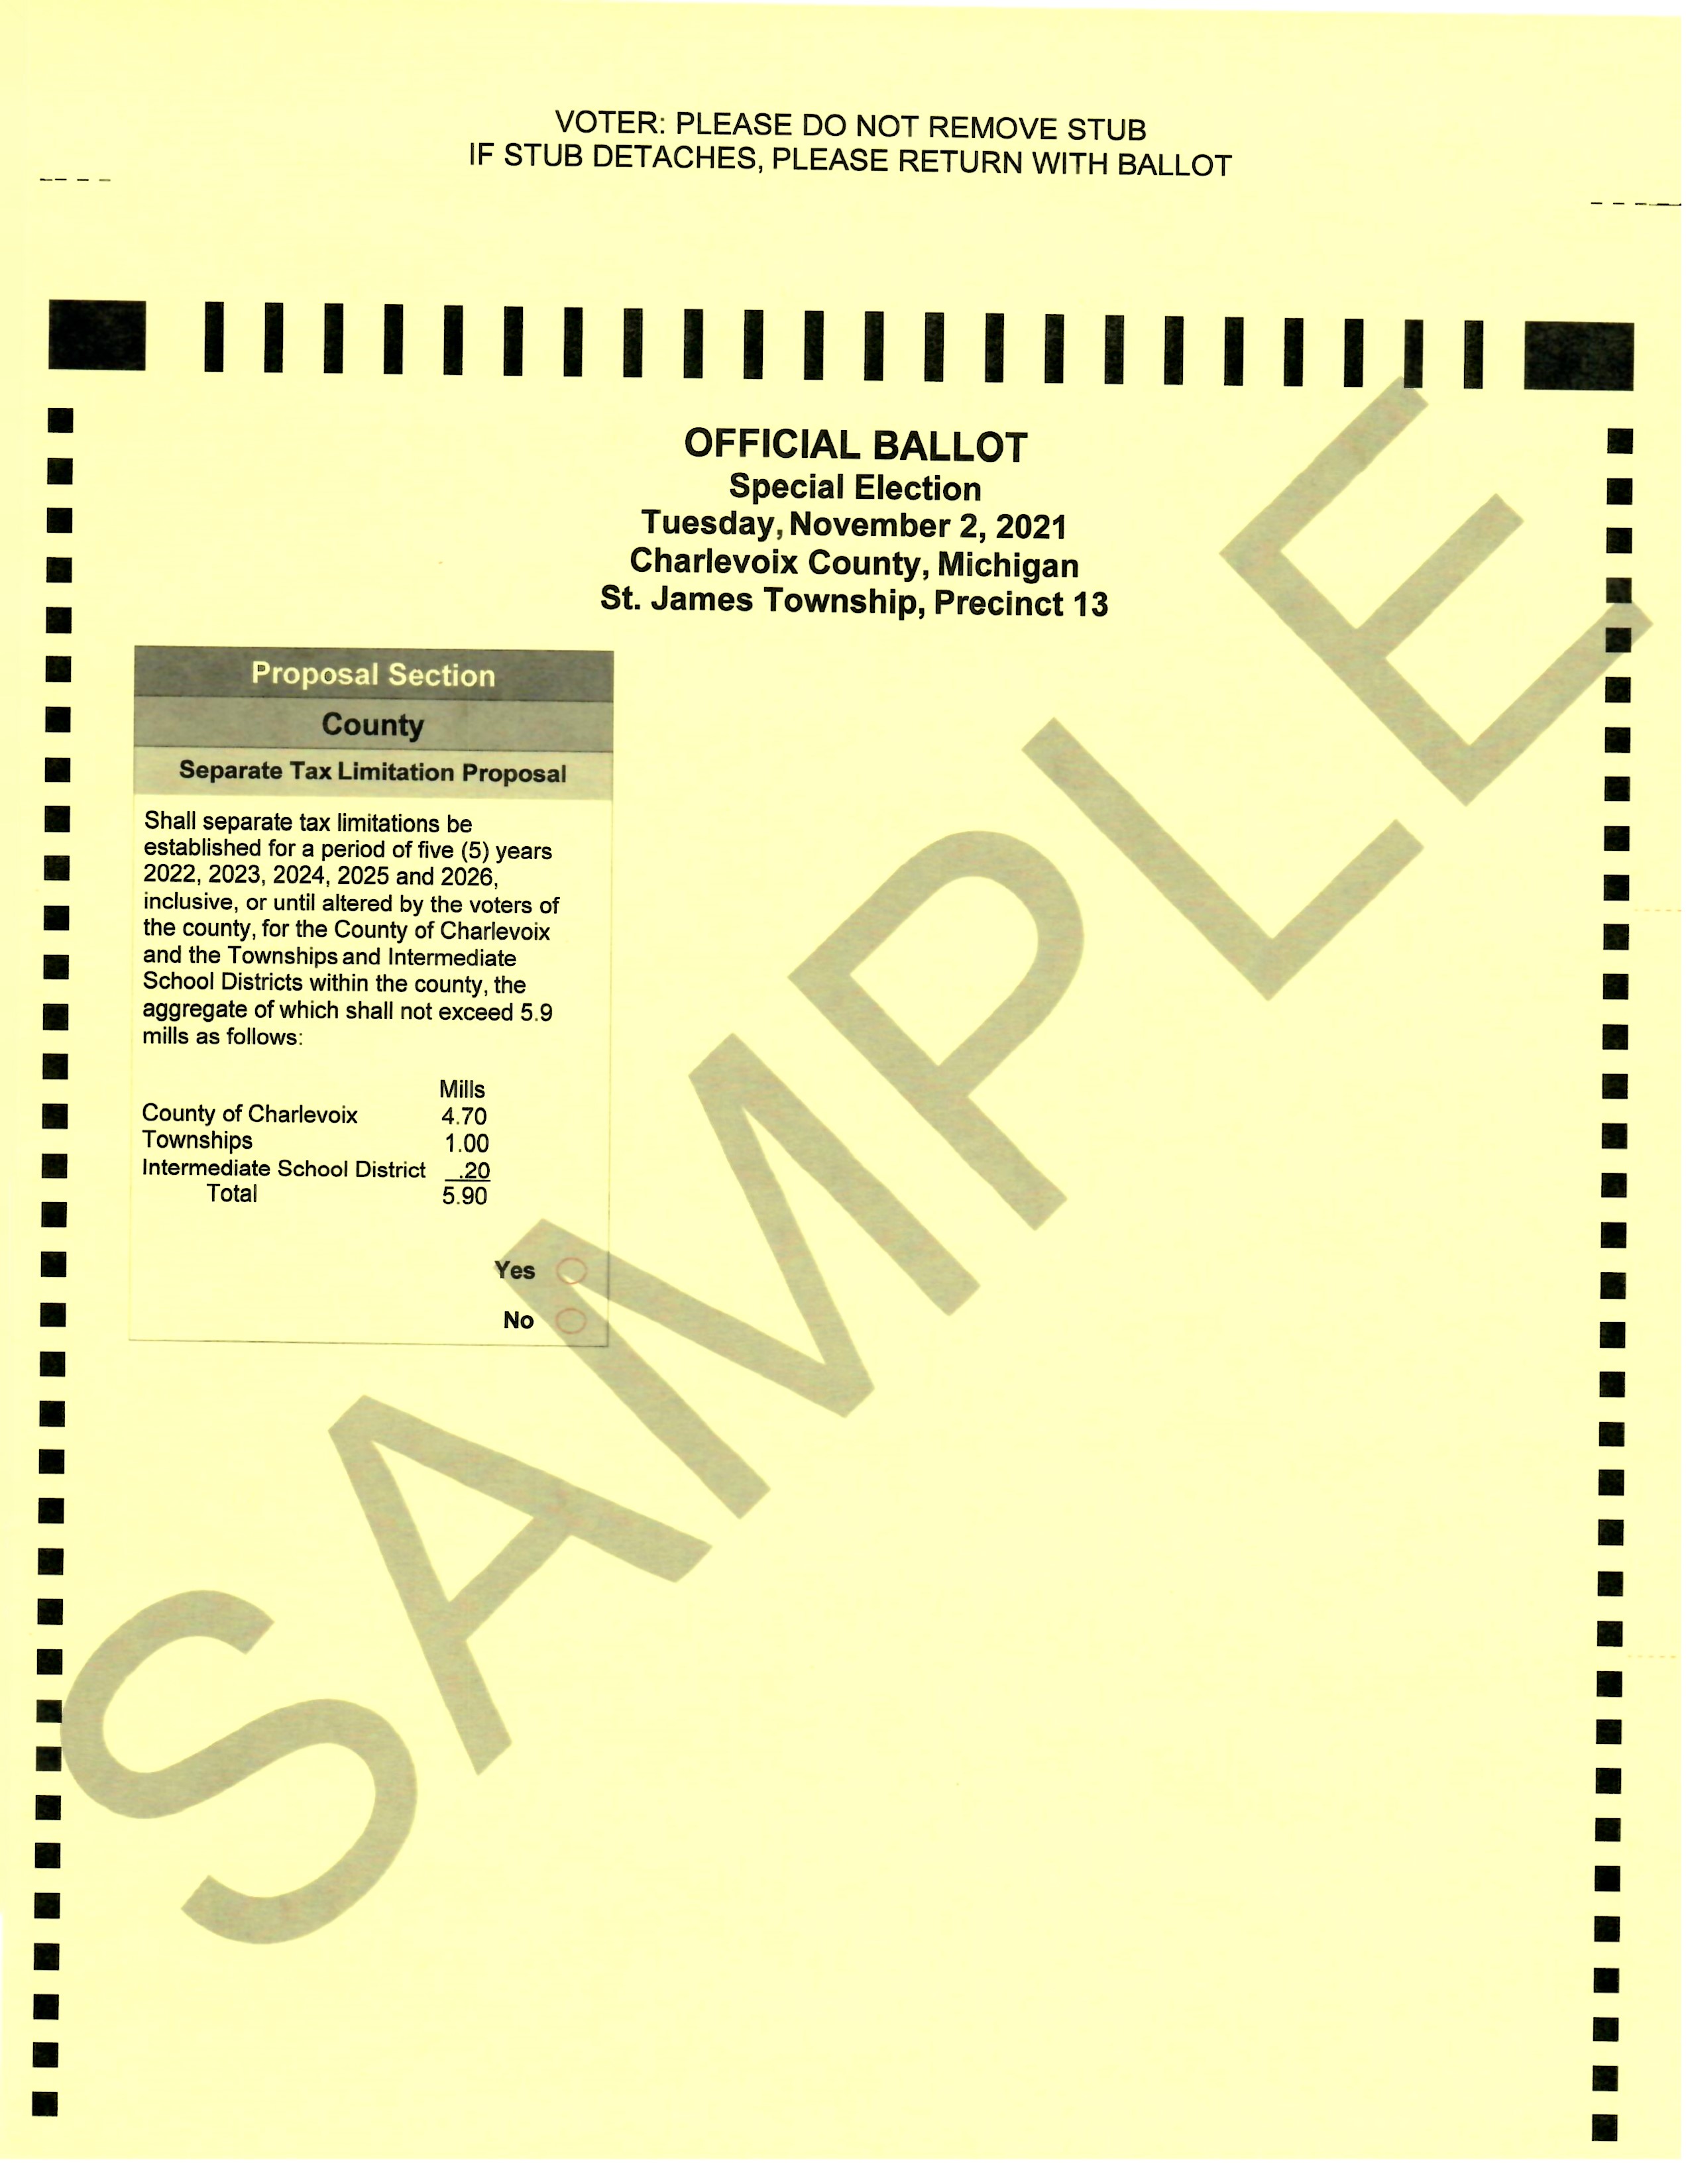 Test ballot 11.3.21.jpg